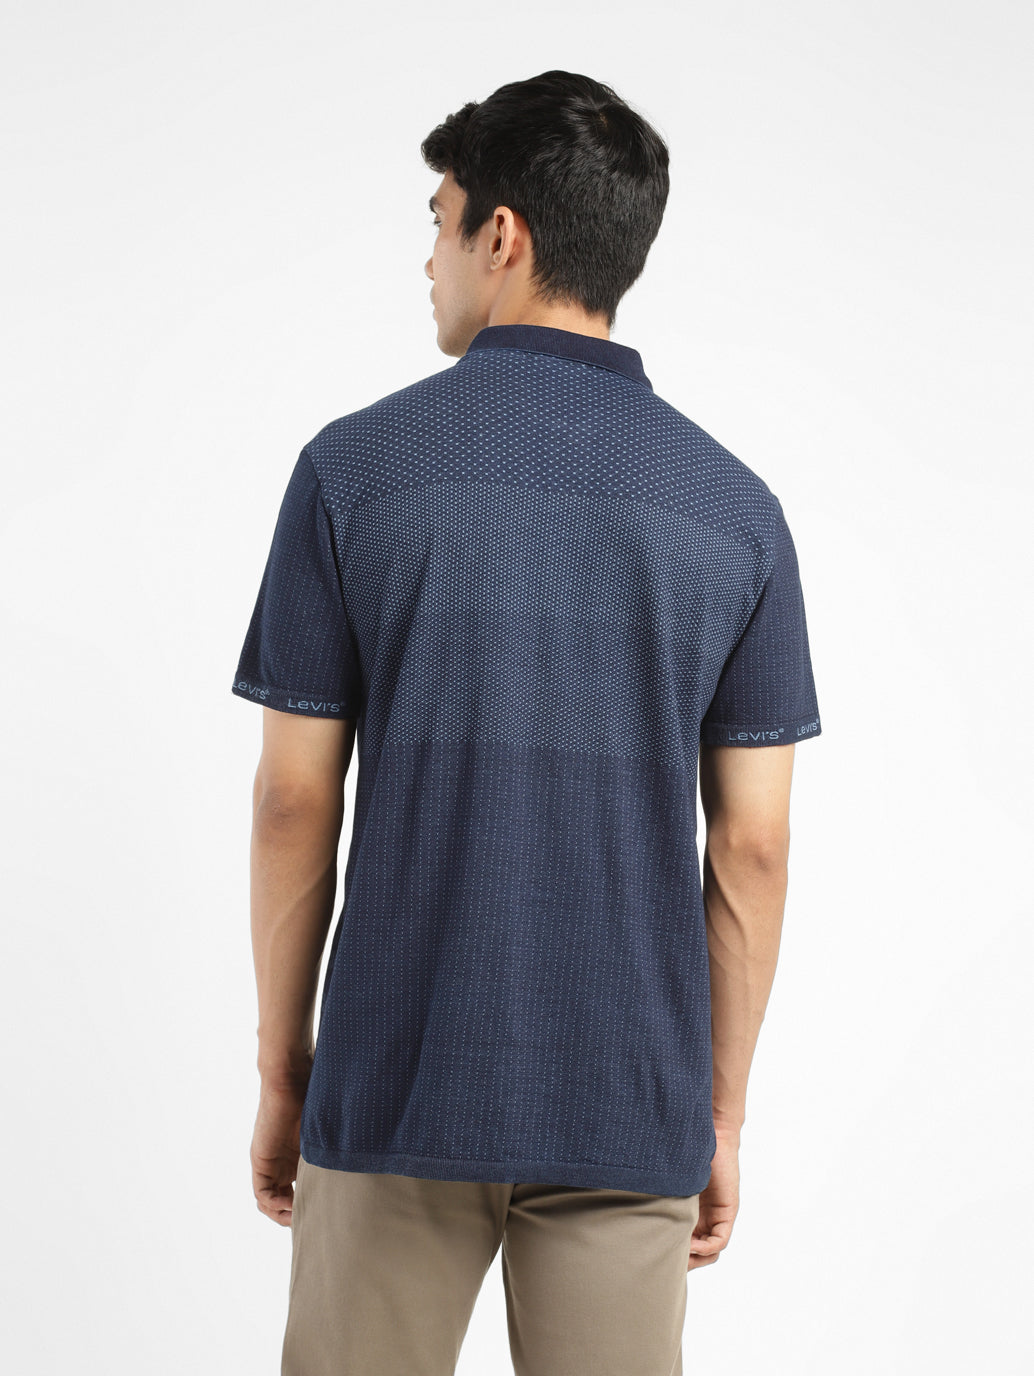 Men's Self Design Polo Collar T-shirt